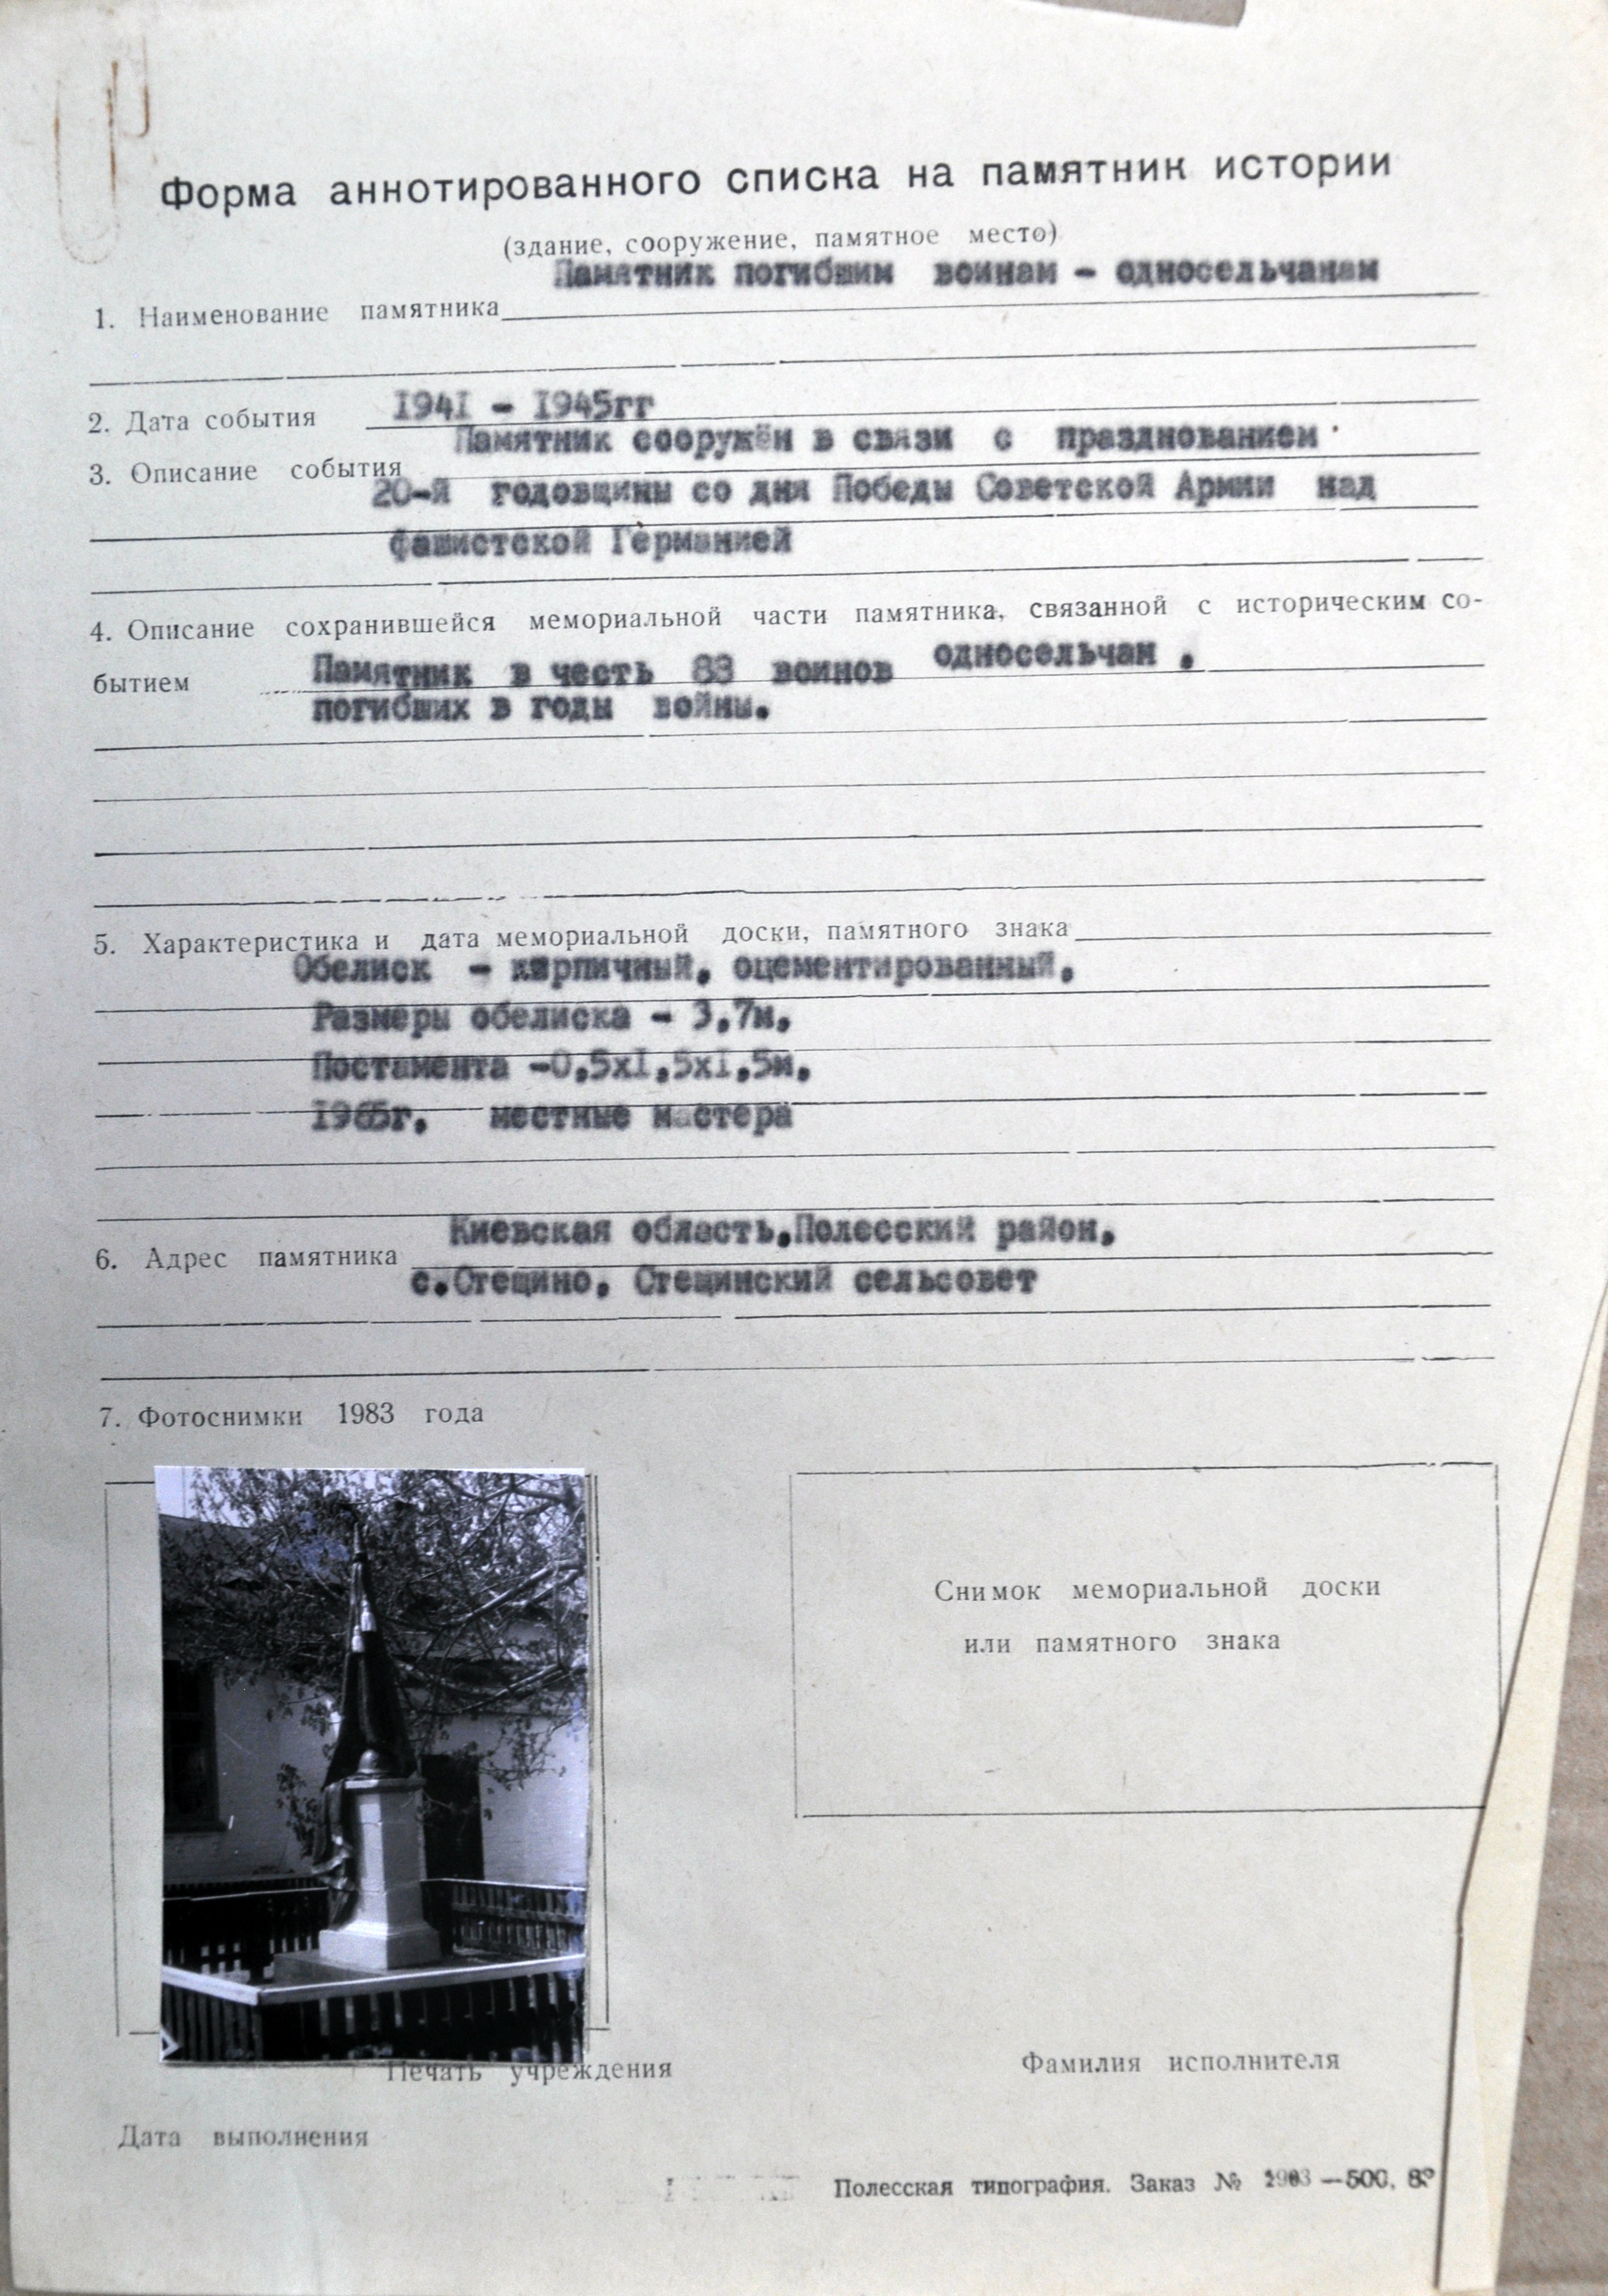 Памятник погибшим воинам-односельчанам в с. Стещино Полесского района